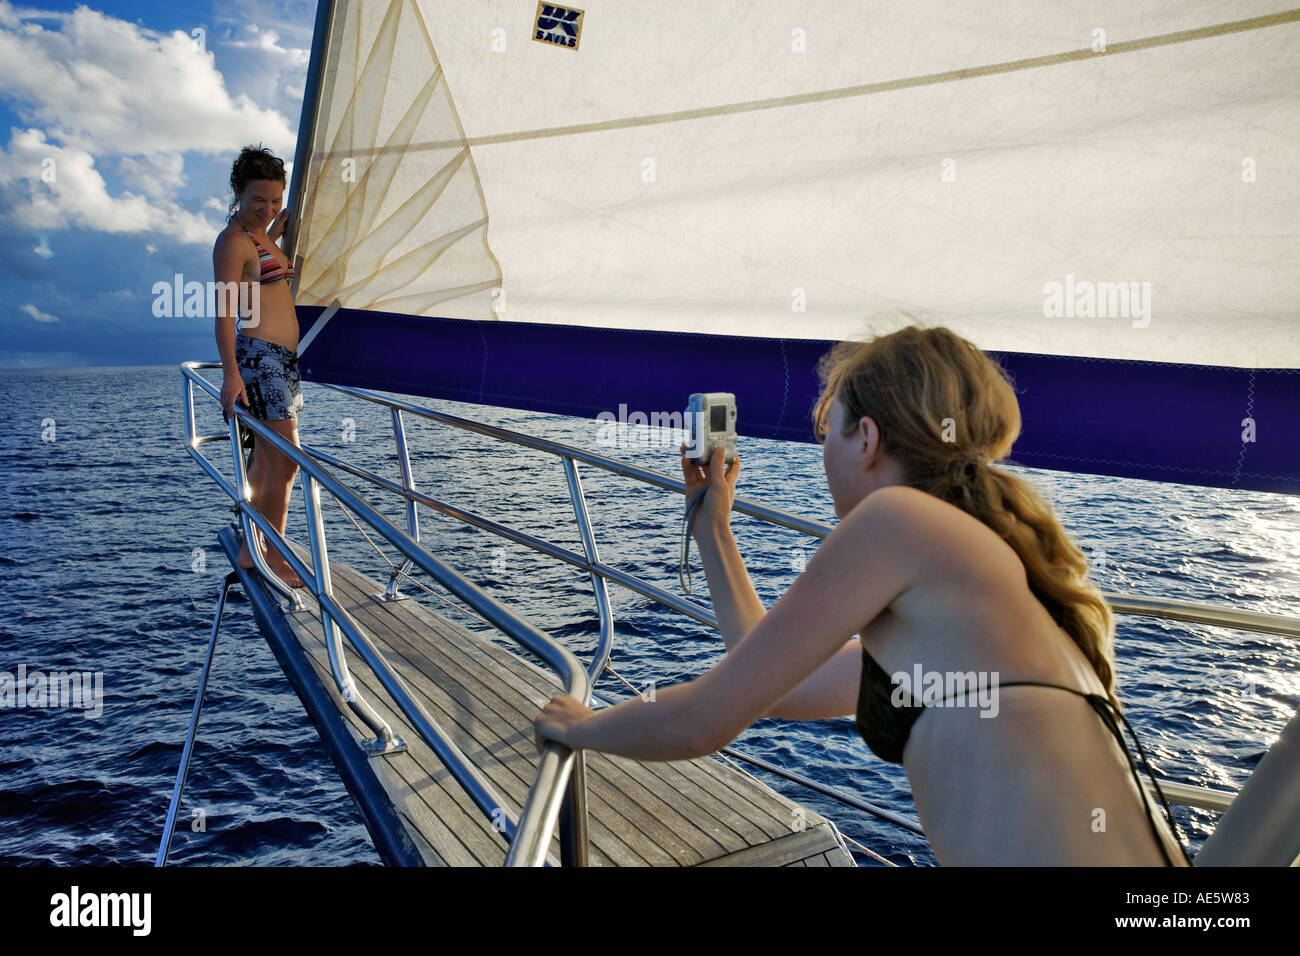 Photographier une autre femme femme posant sur l'avant du yacht Sea Star Yacht à voile Seychelles Banque D'Images